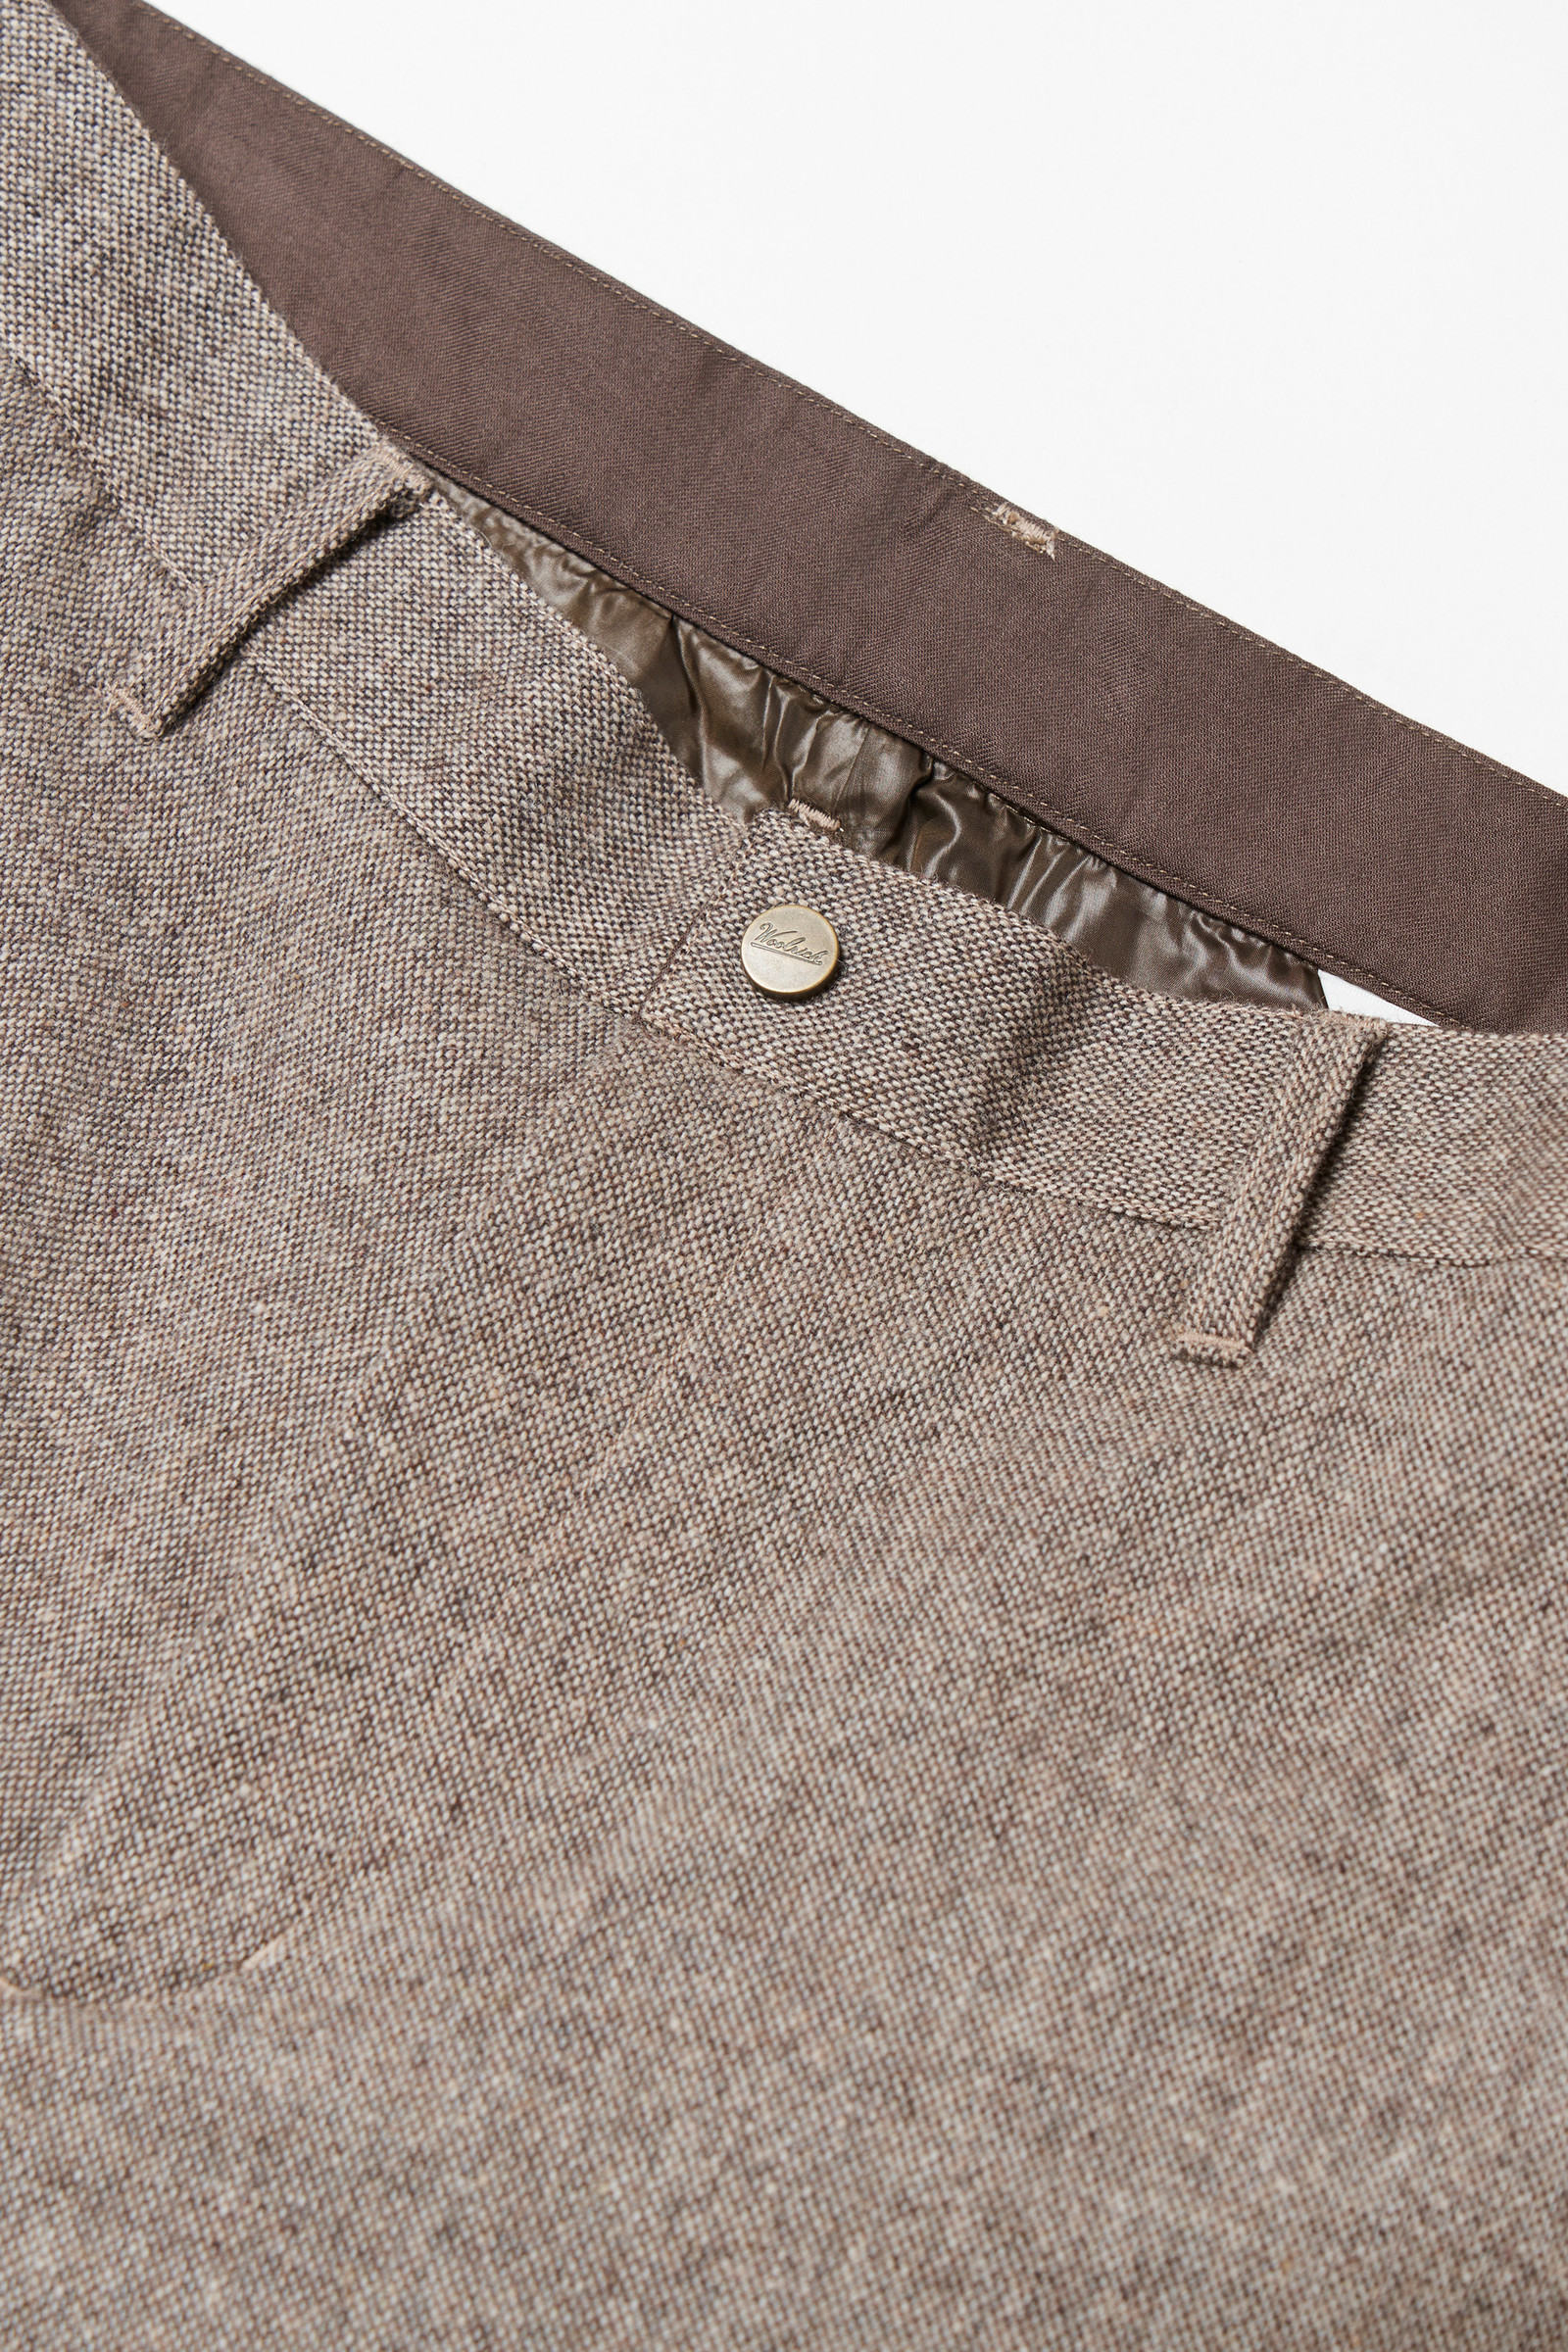 Men's Recycled Wool Tweed Pants Beige